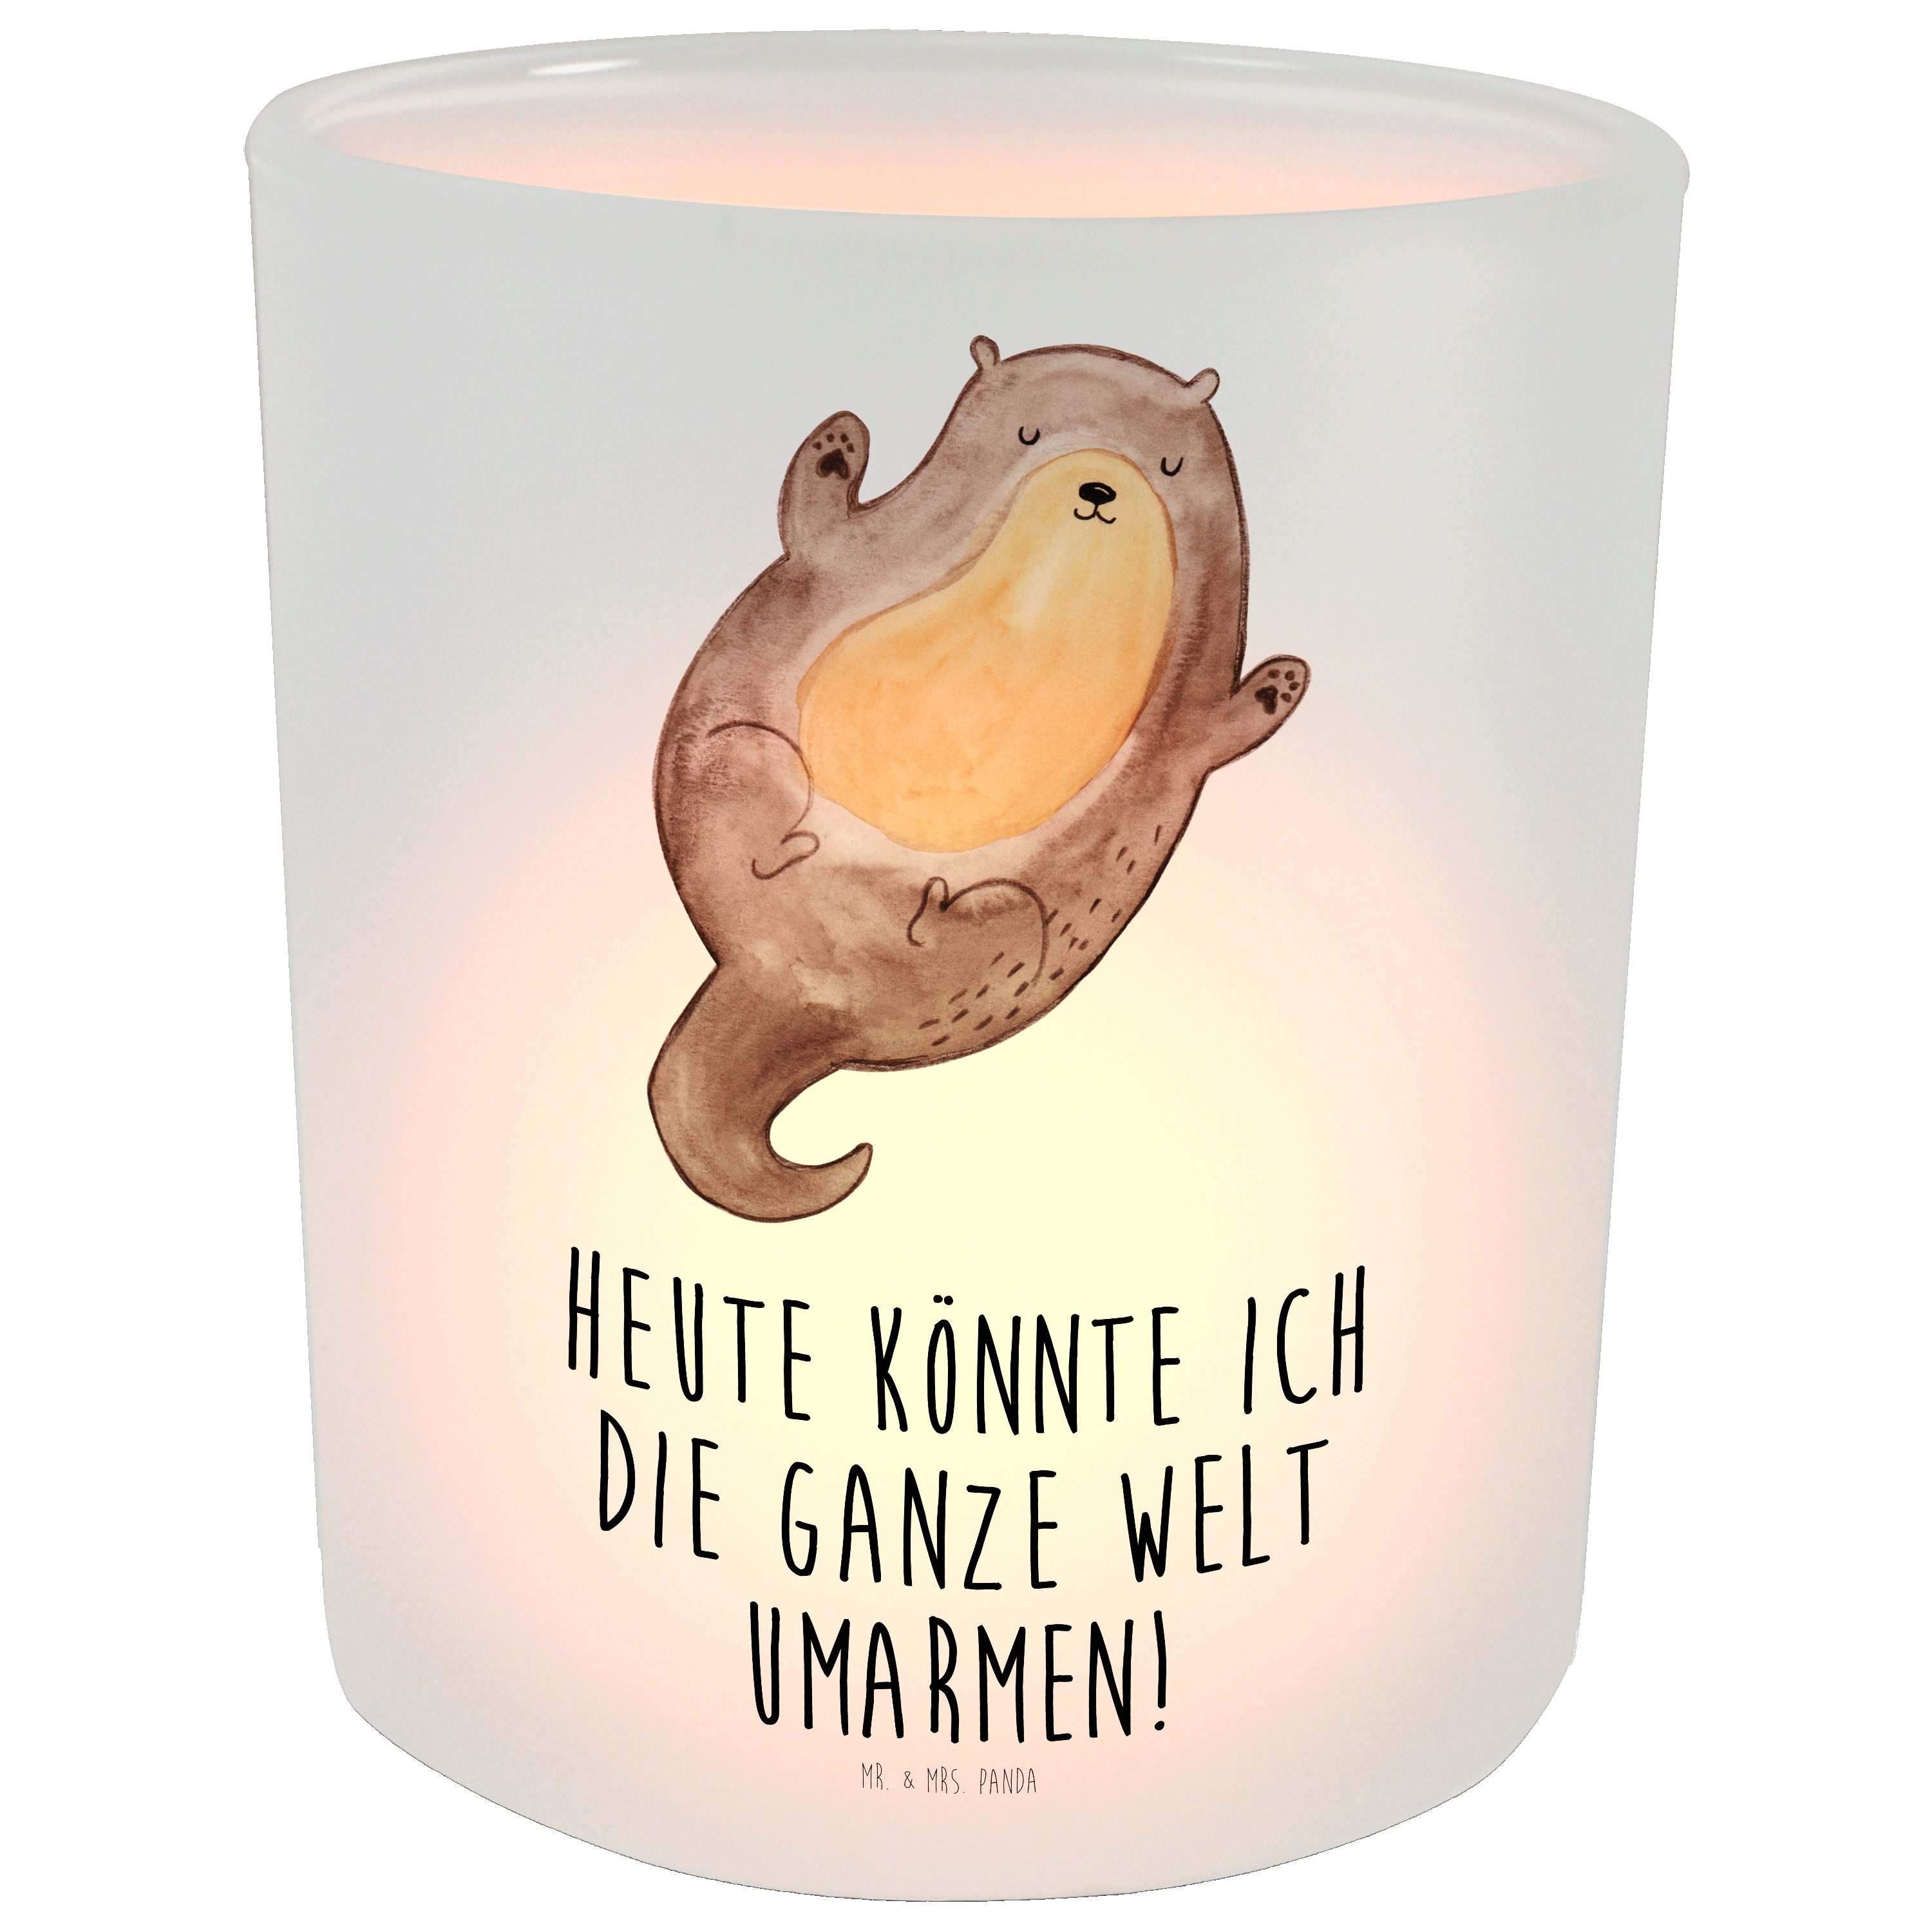 Mr. & Mrs. Panda Windlicht Otter Umarmen - Transparent - Geschenk, Seeotter, Fischotter, Kerzen (1 St)